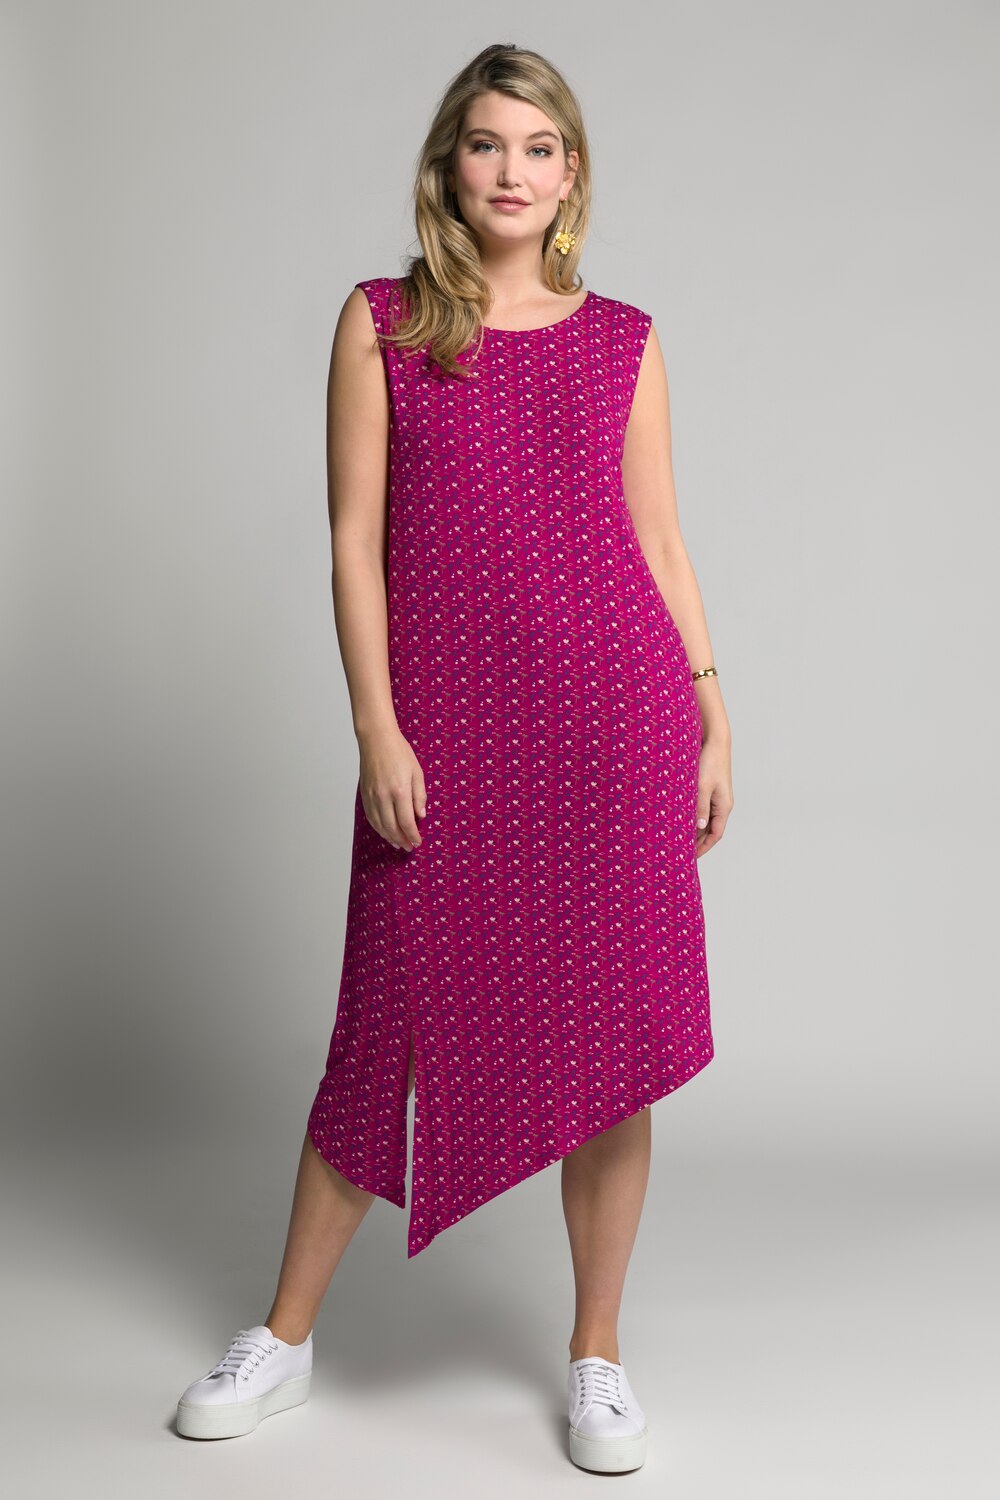 Plus Size Mini Palm Print Asymmetric Hem Stretch Knit Tank Dress, Woman, pink, size: 16/18, viscose, Ulla Popken